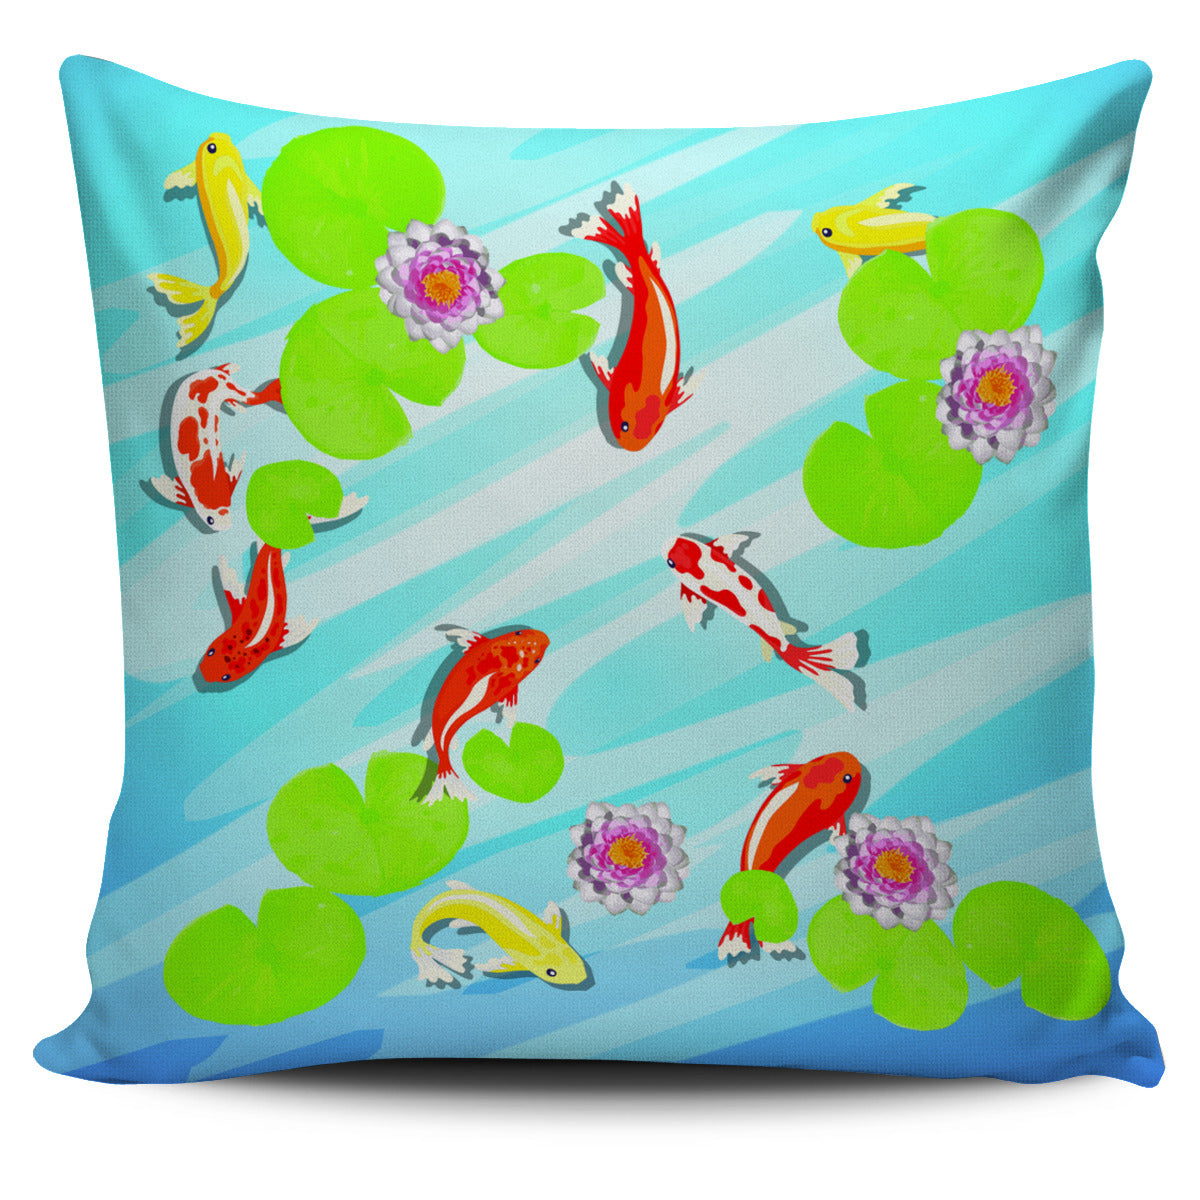 Koi Water Garden Pillow Cover